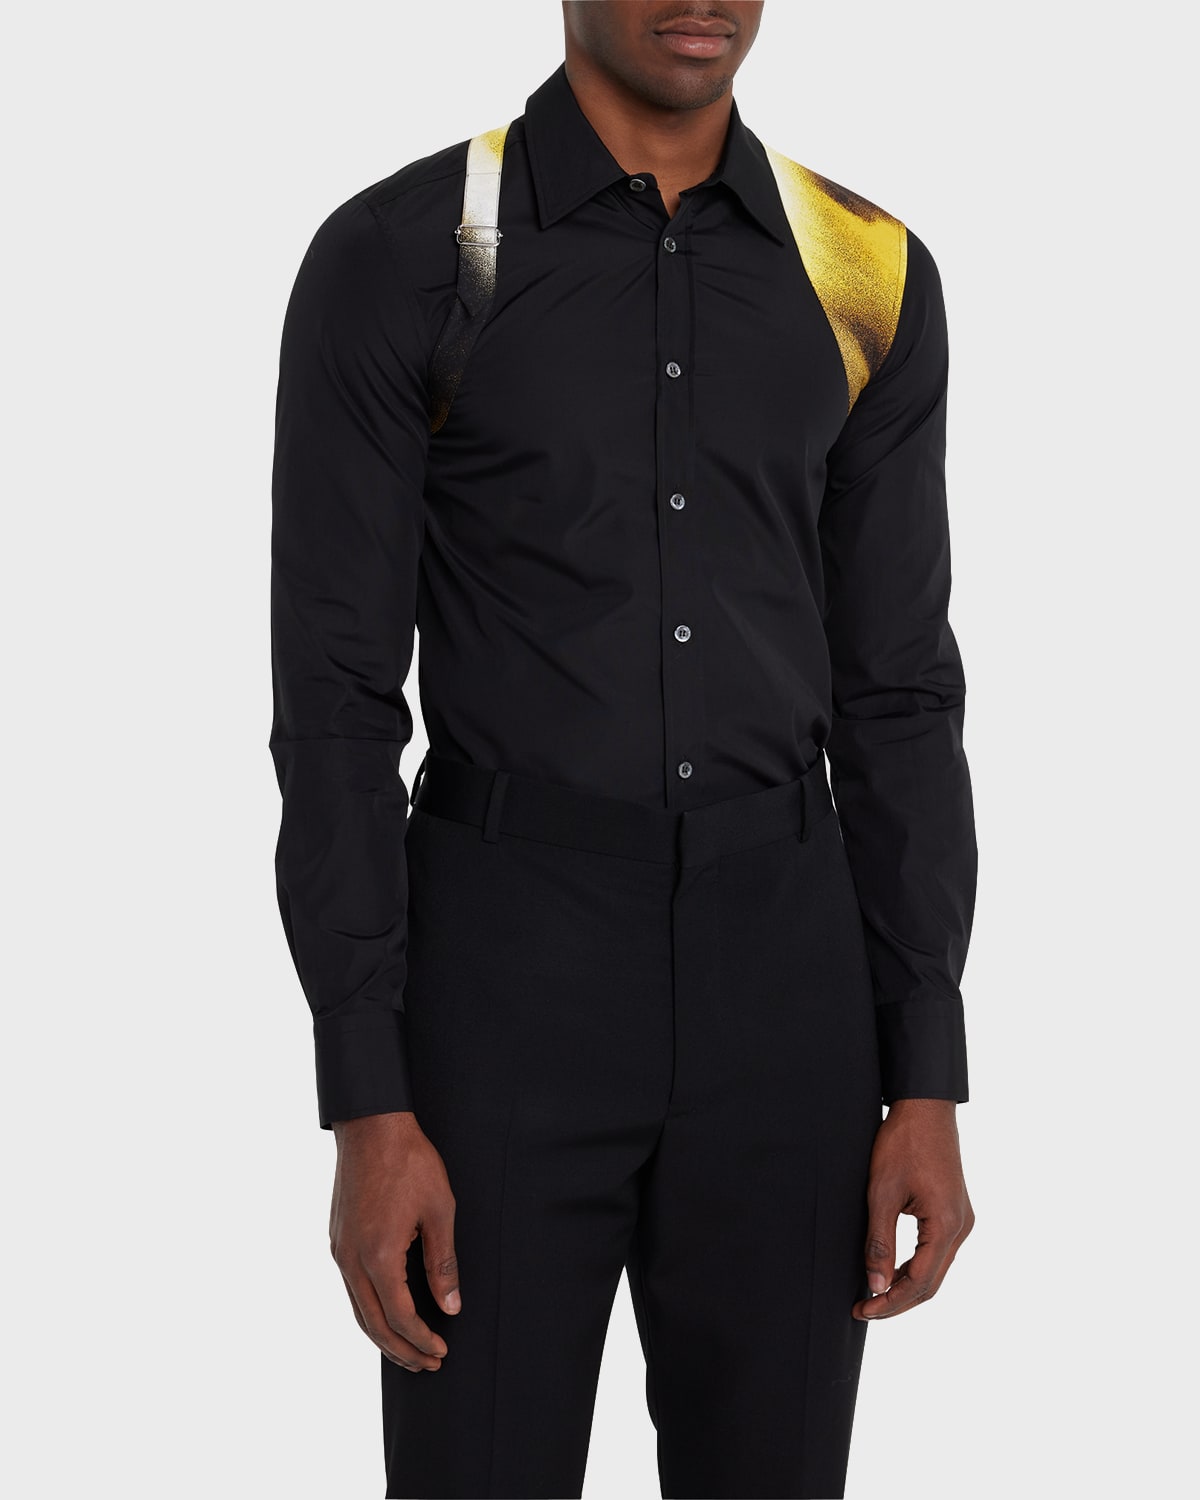 Alexander Mcqueen Men's Poplin Abstract-print Harness Sport Shirt